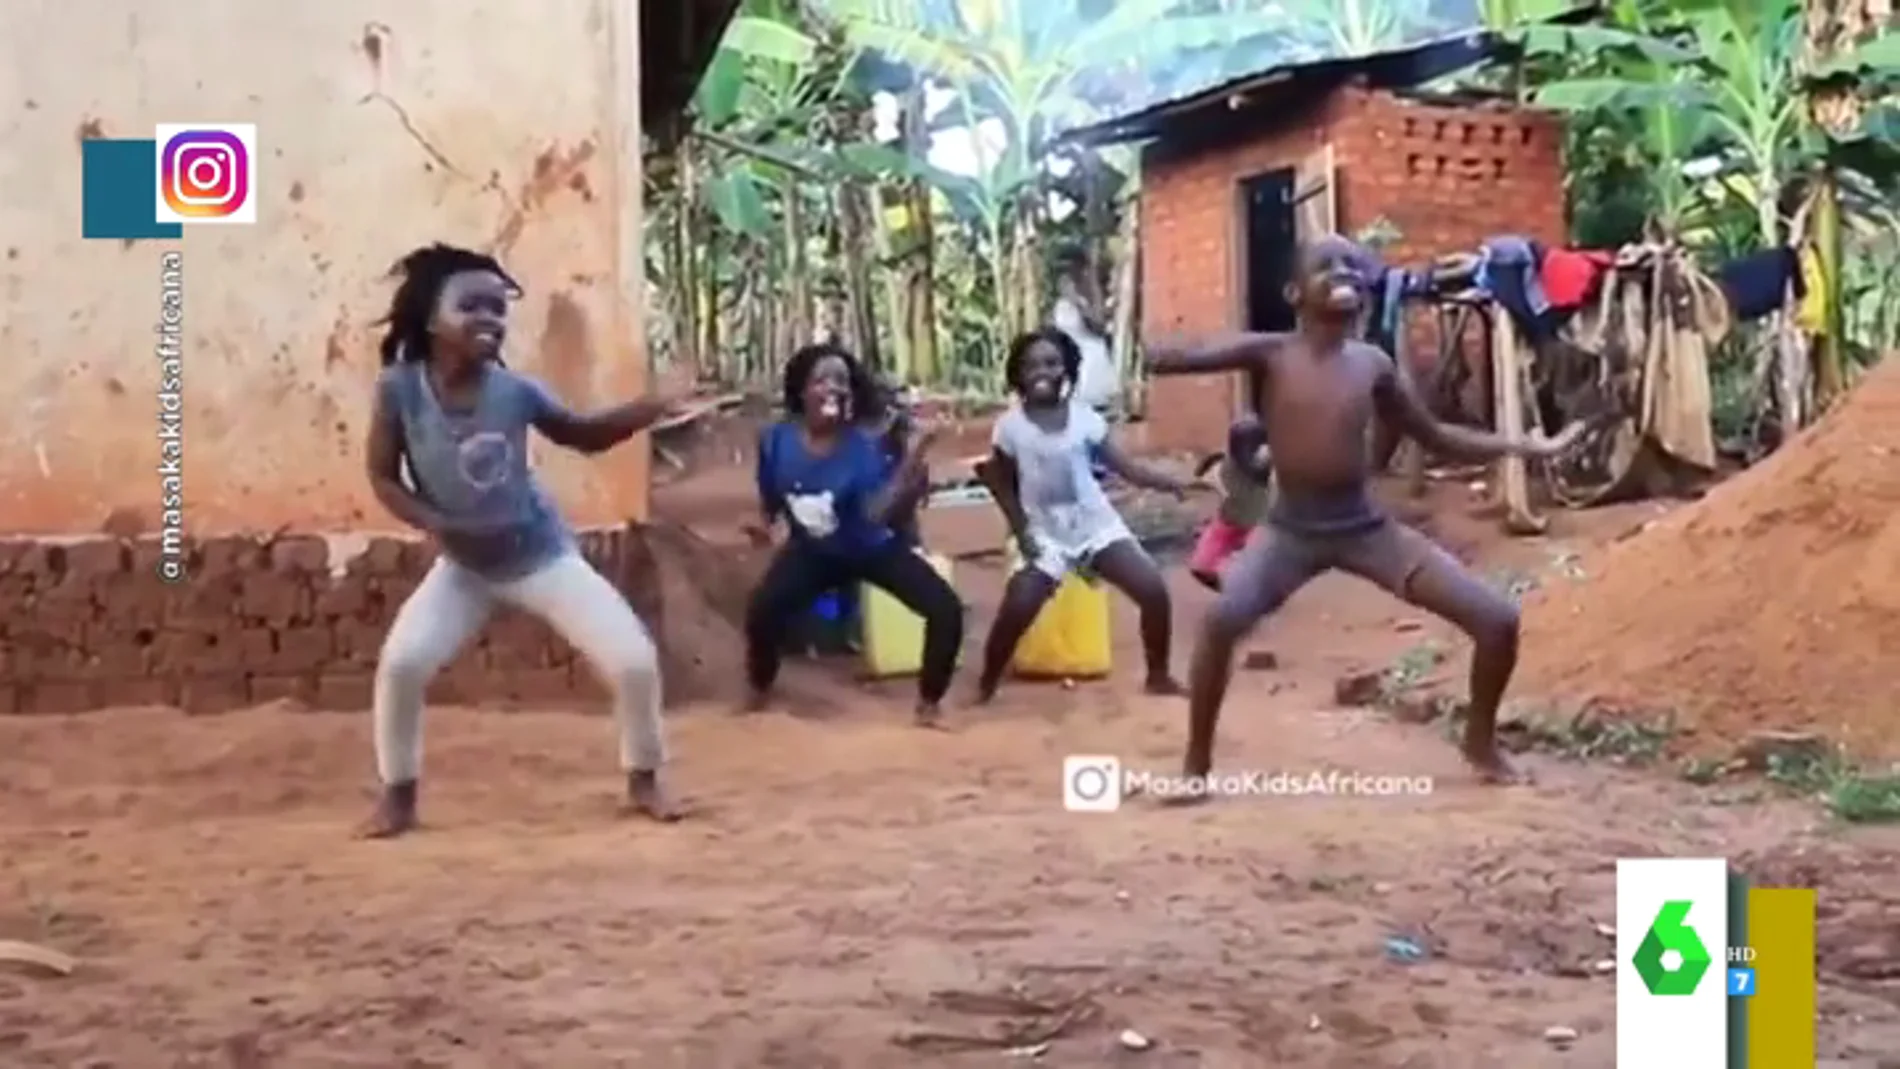 'Masaka kids Africana', el grupo de niños de un hogar infantil en Uganda que triunfa con sus increíbles bailes